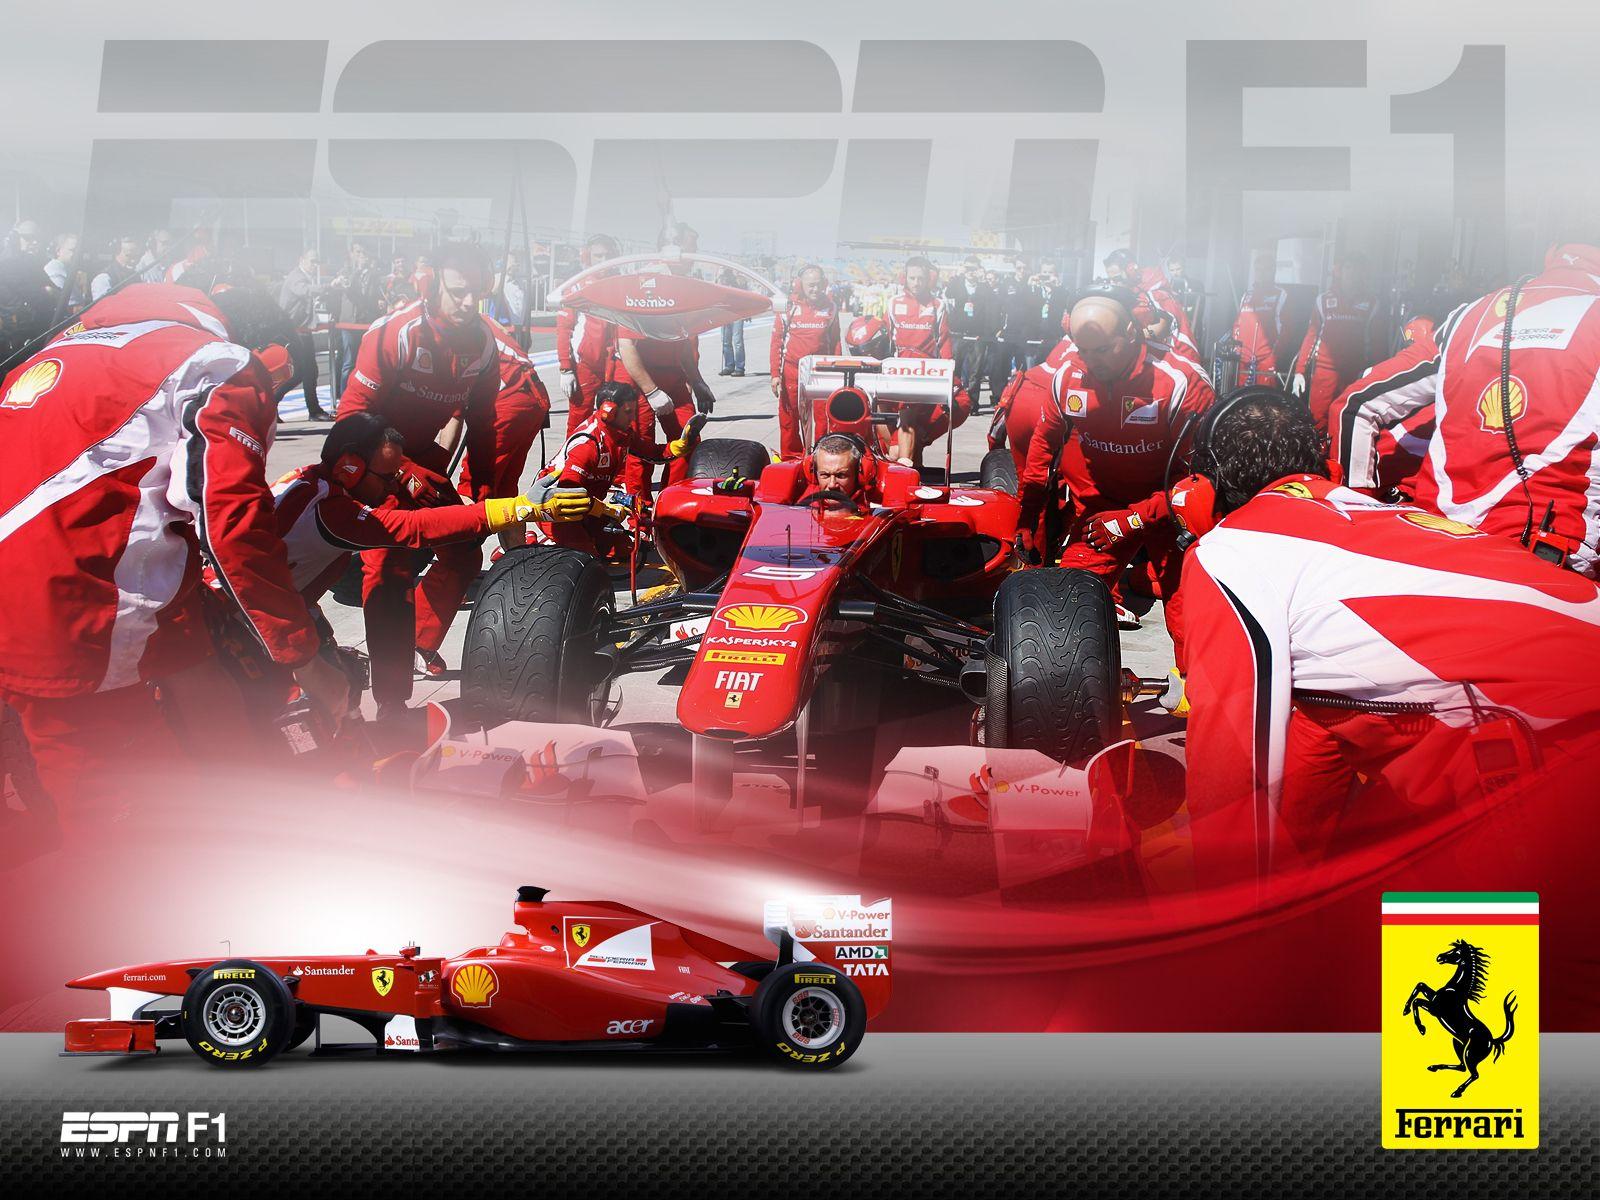 Ferrari 2011. Formula 1 wallpaper